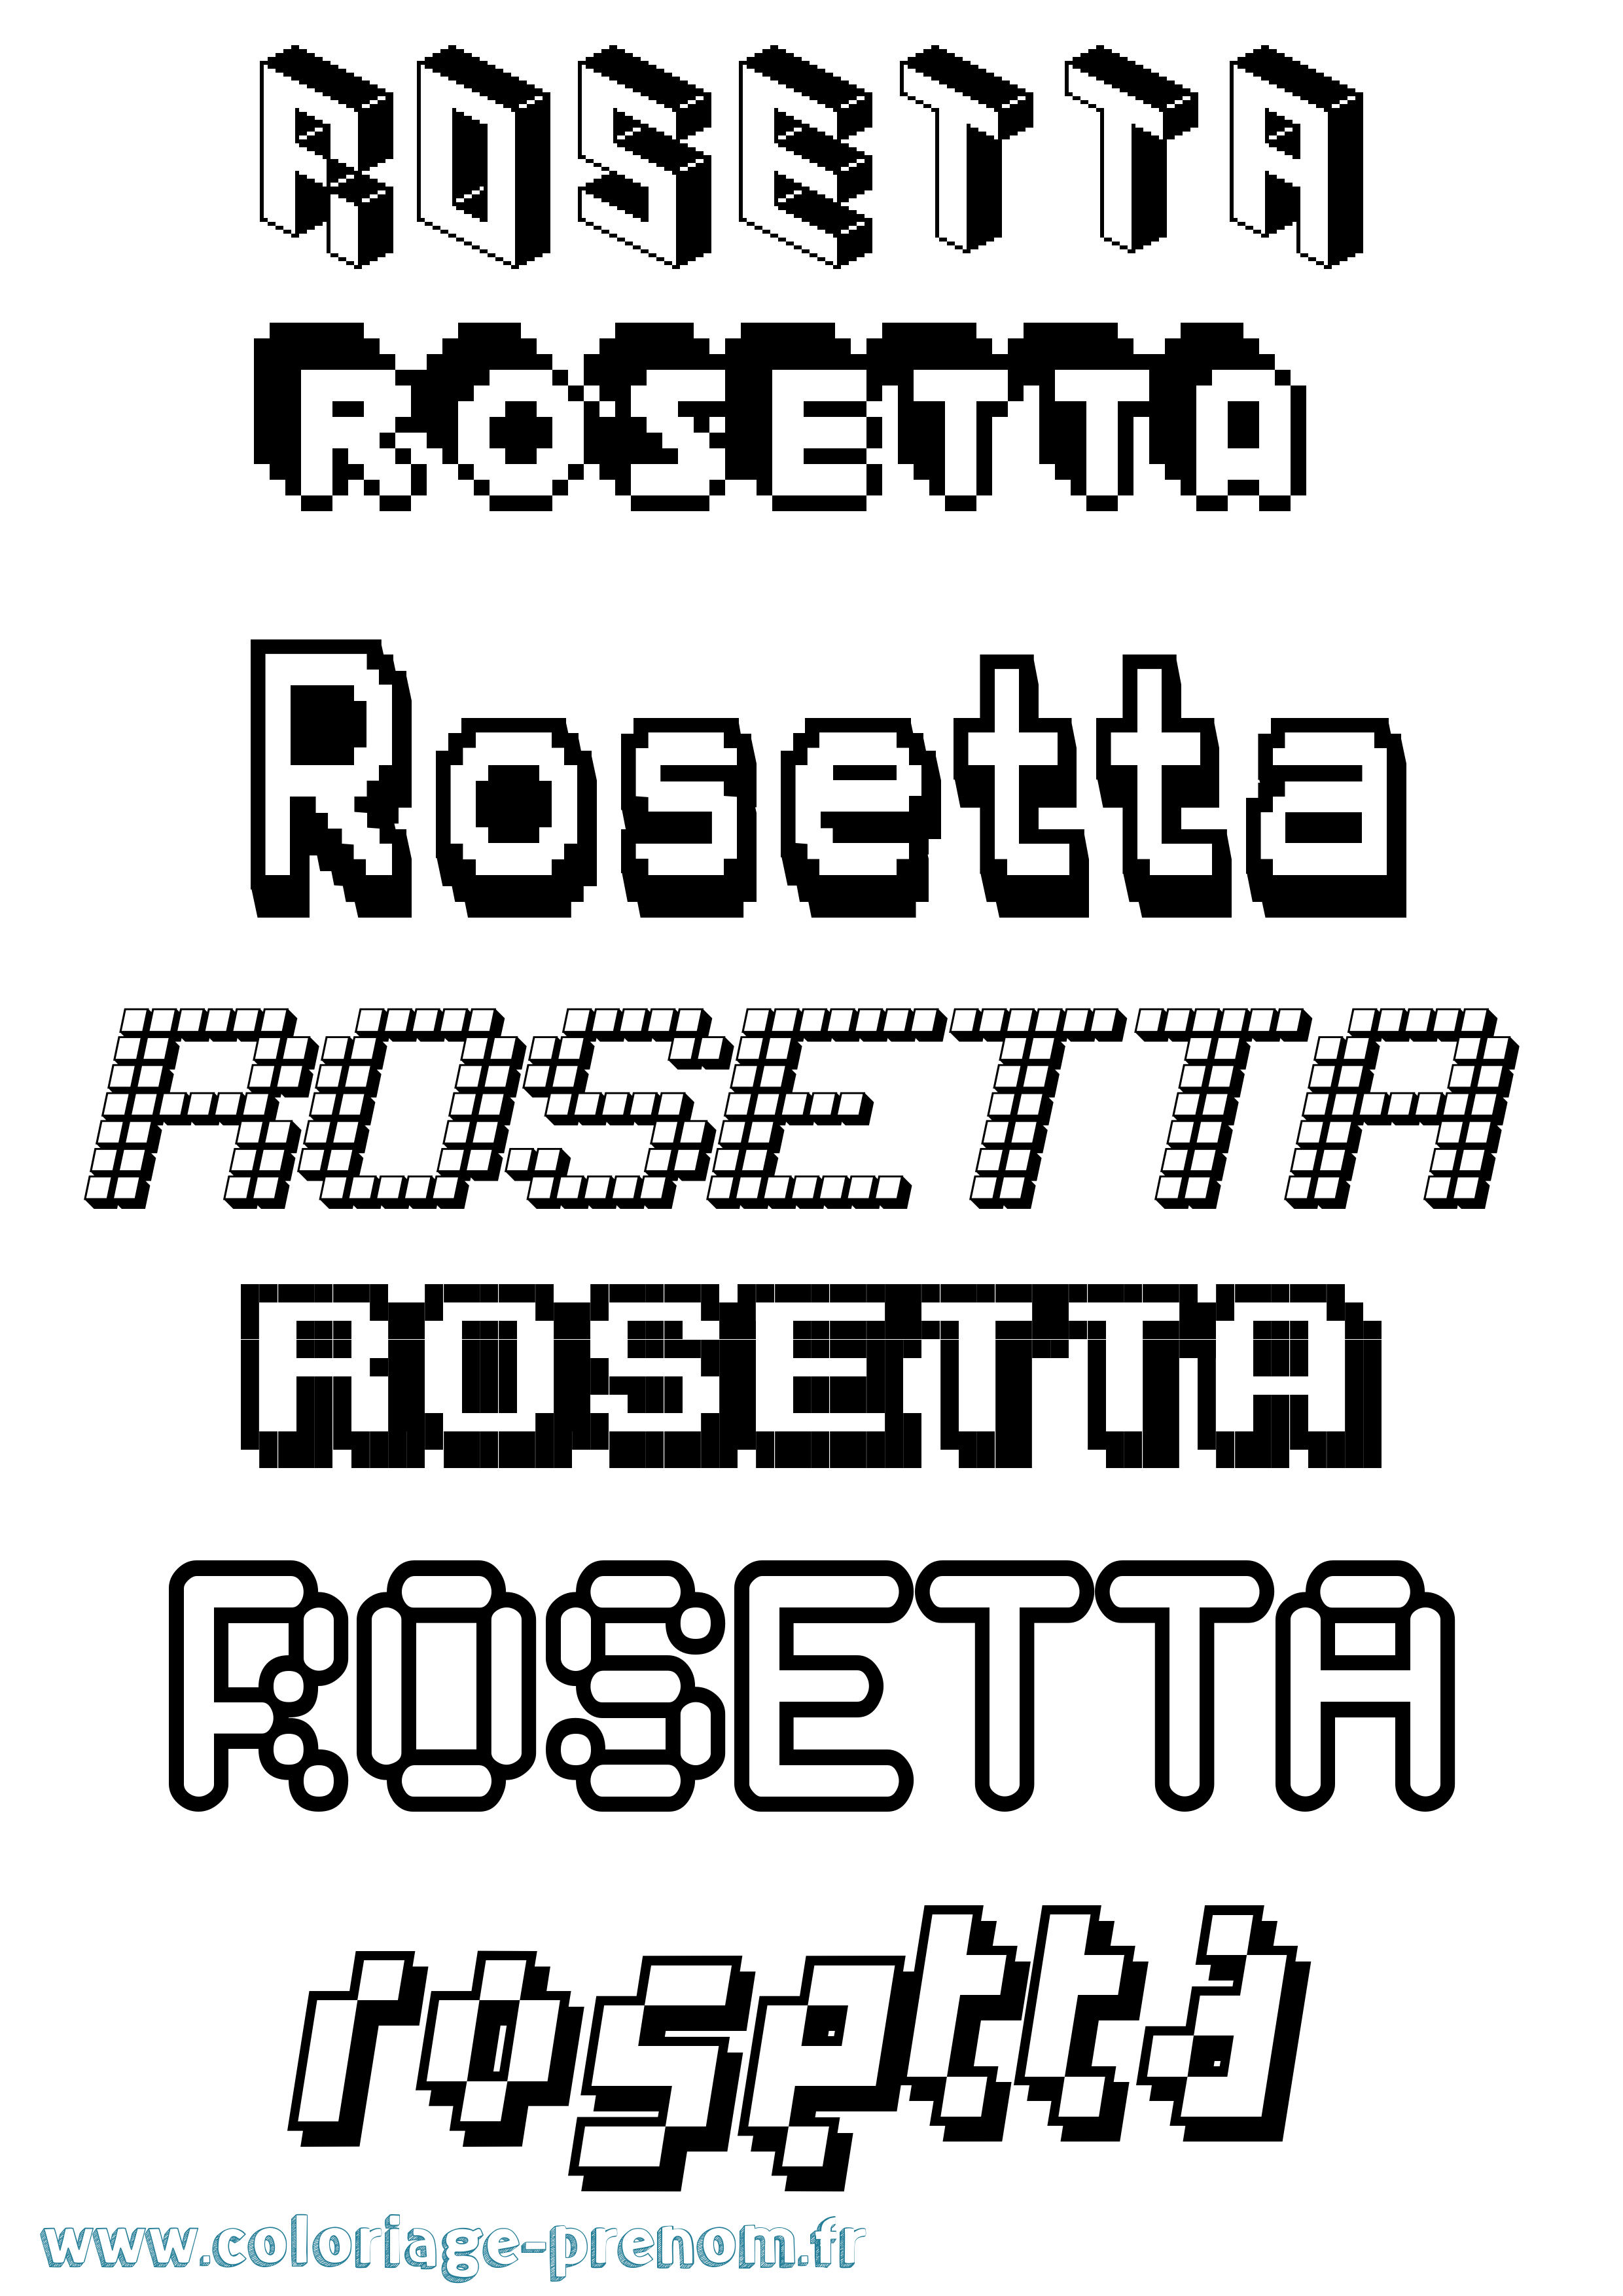 Coloriage prénom Rosetta Pixel